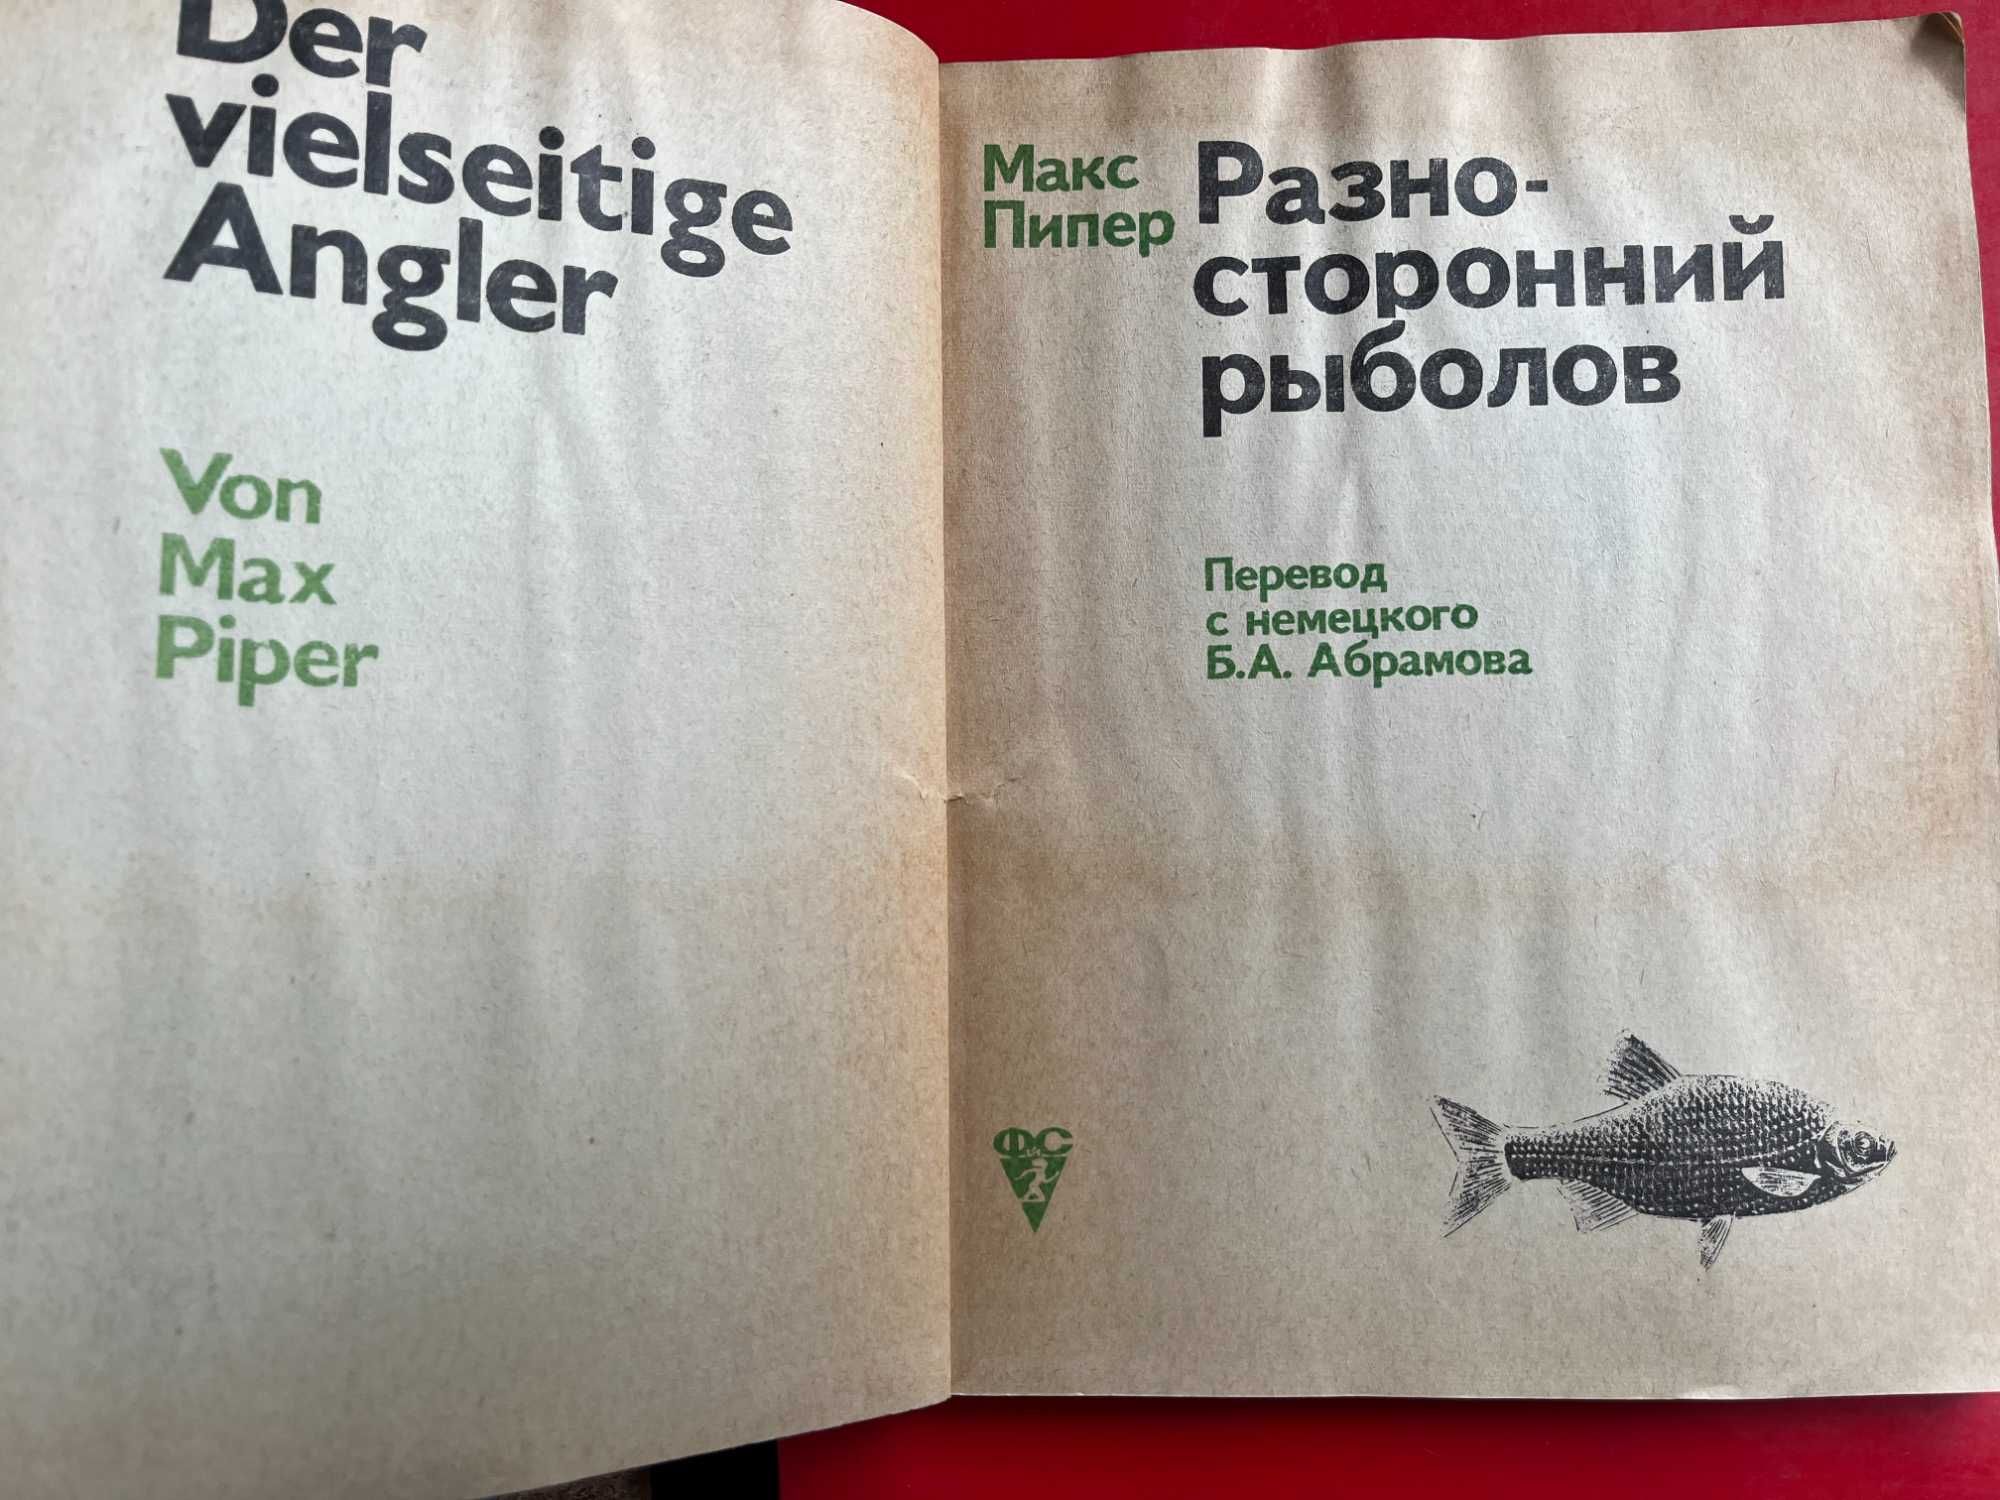 "Разносторонний рыболов" Макс Пипер